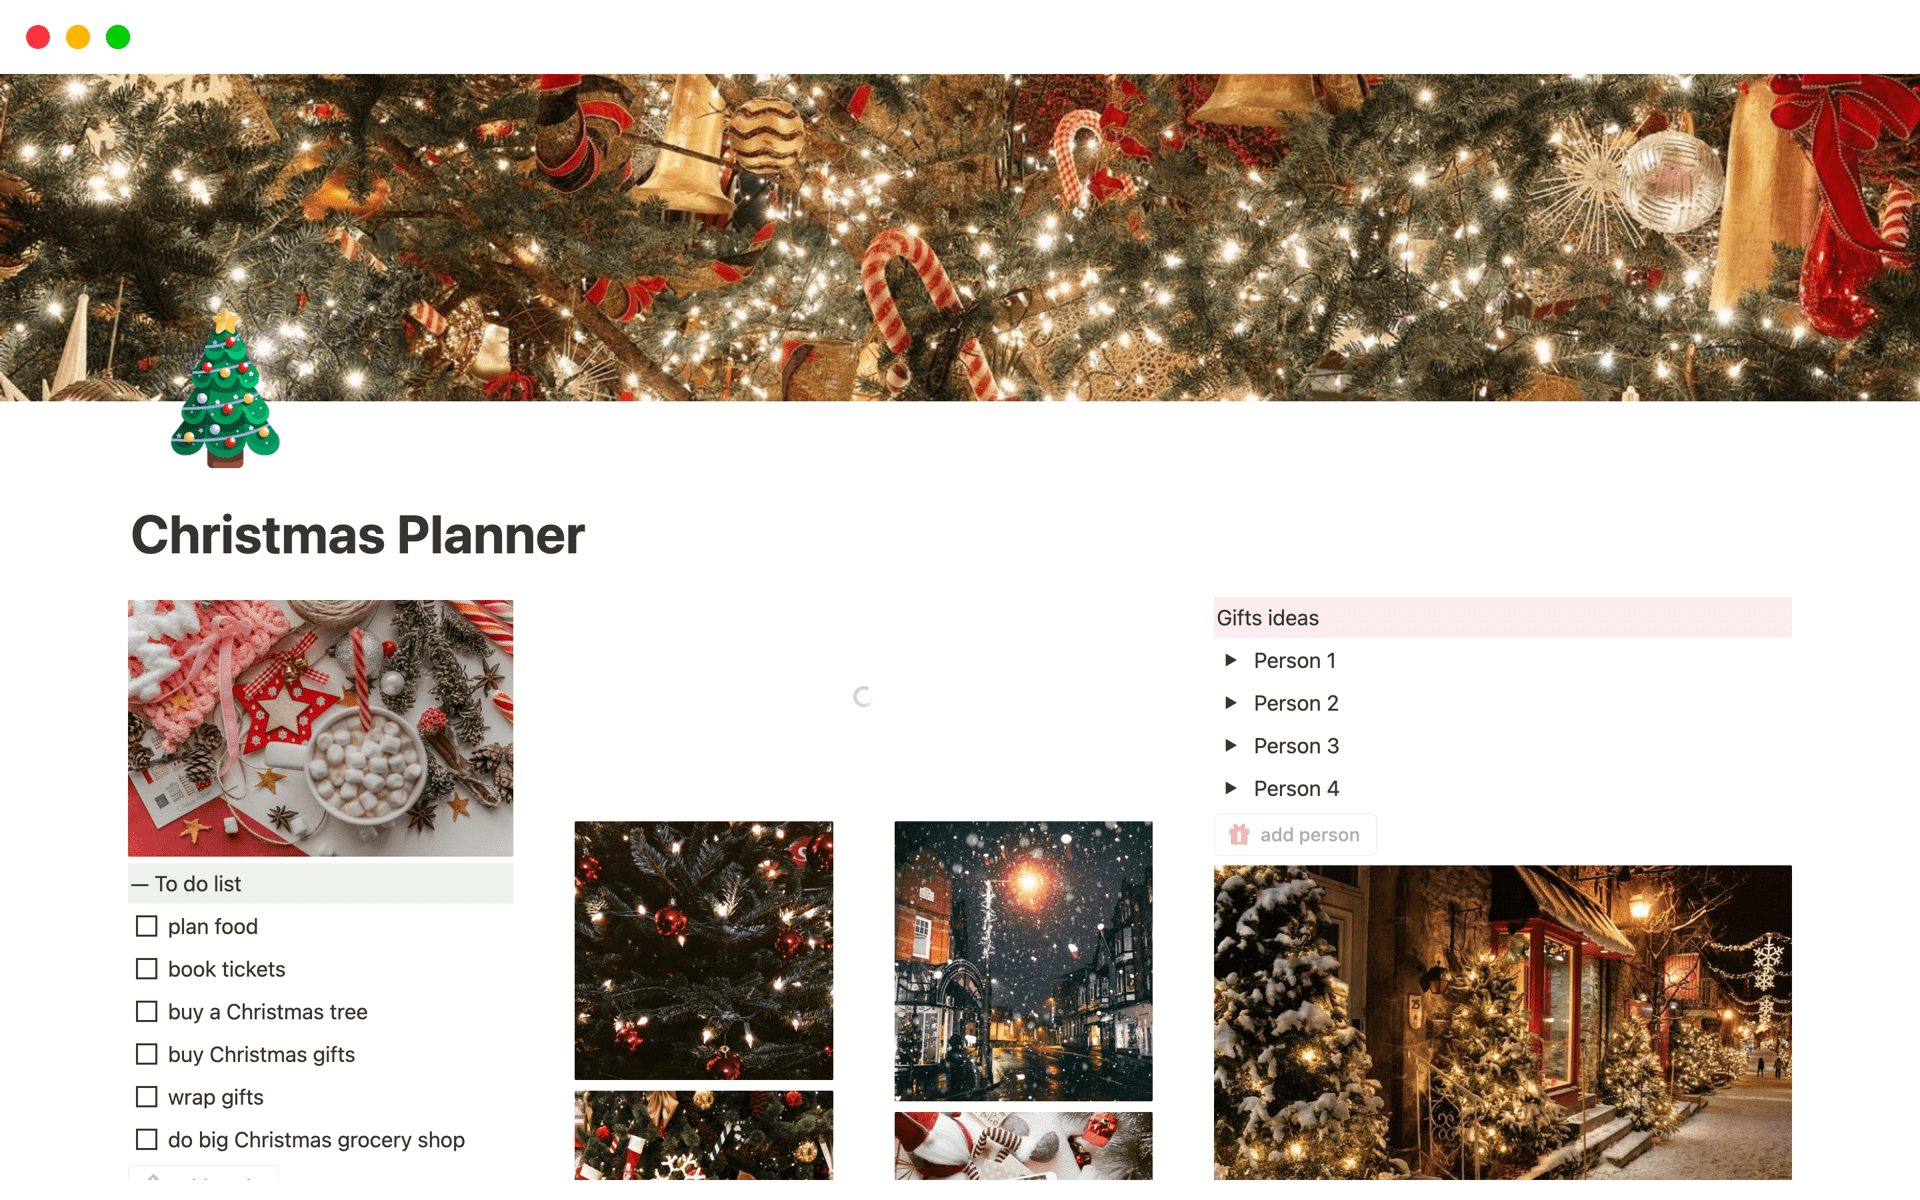 Aperçu du modèle de Christmas Planner